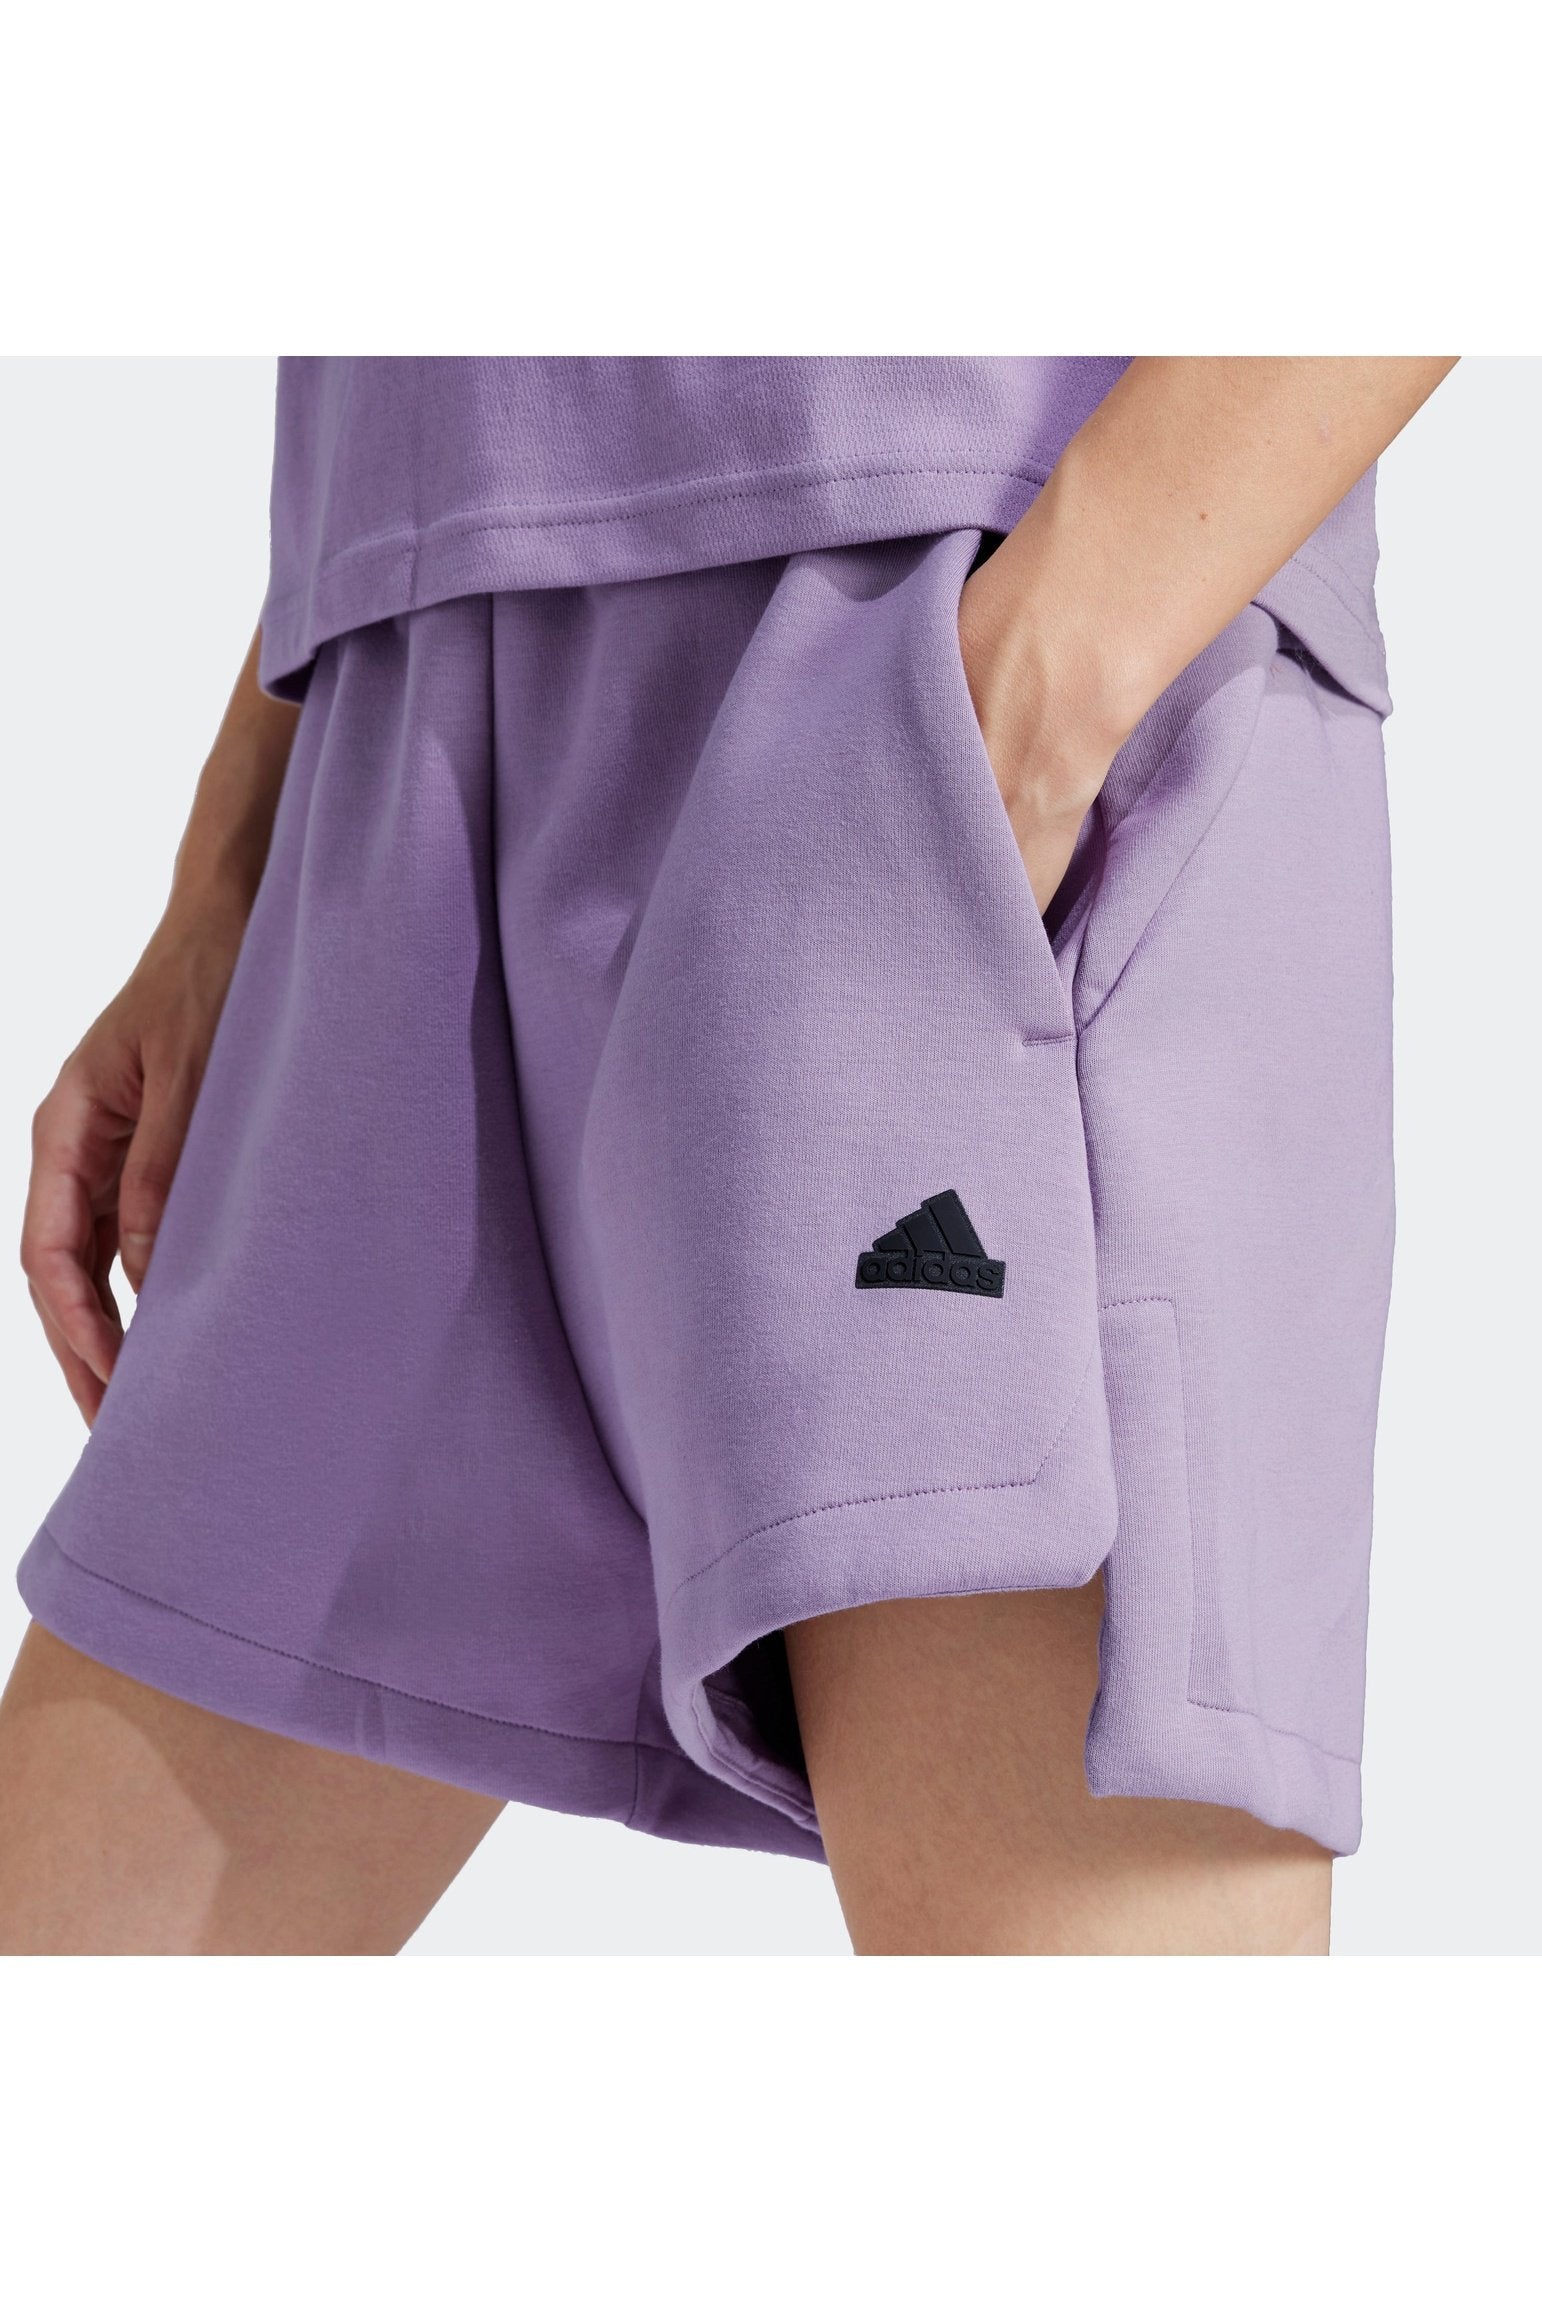 מכנסיים קצרים לנשים Z.N.E. בצבע סגול לילך